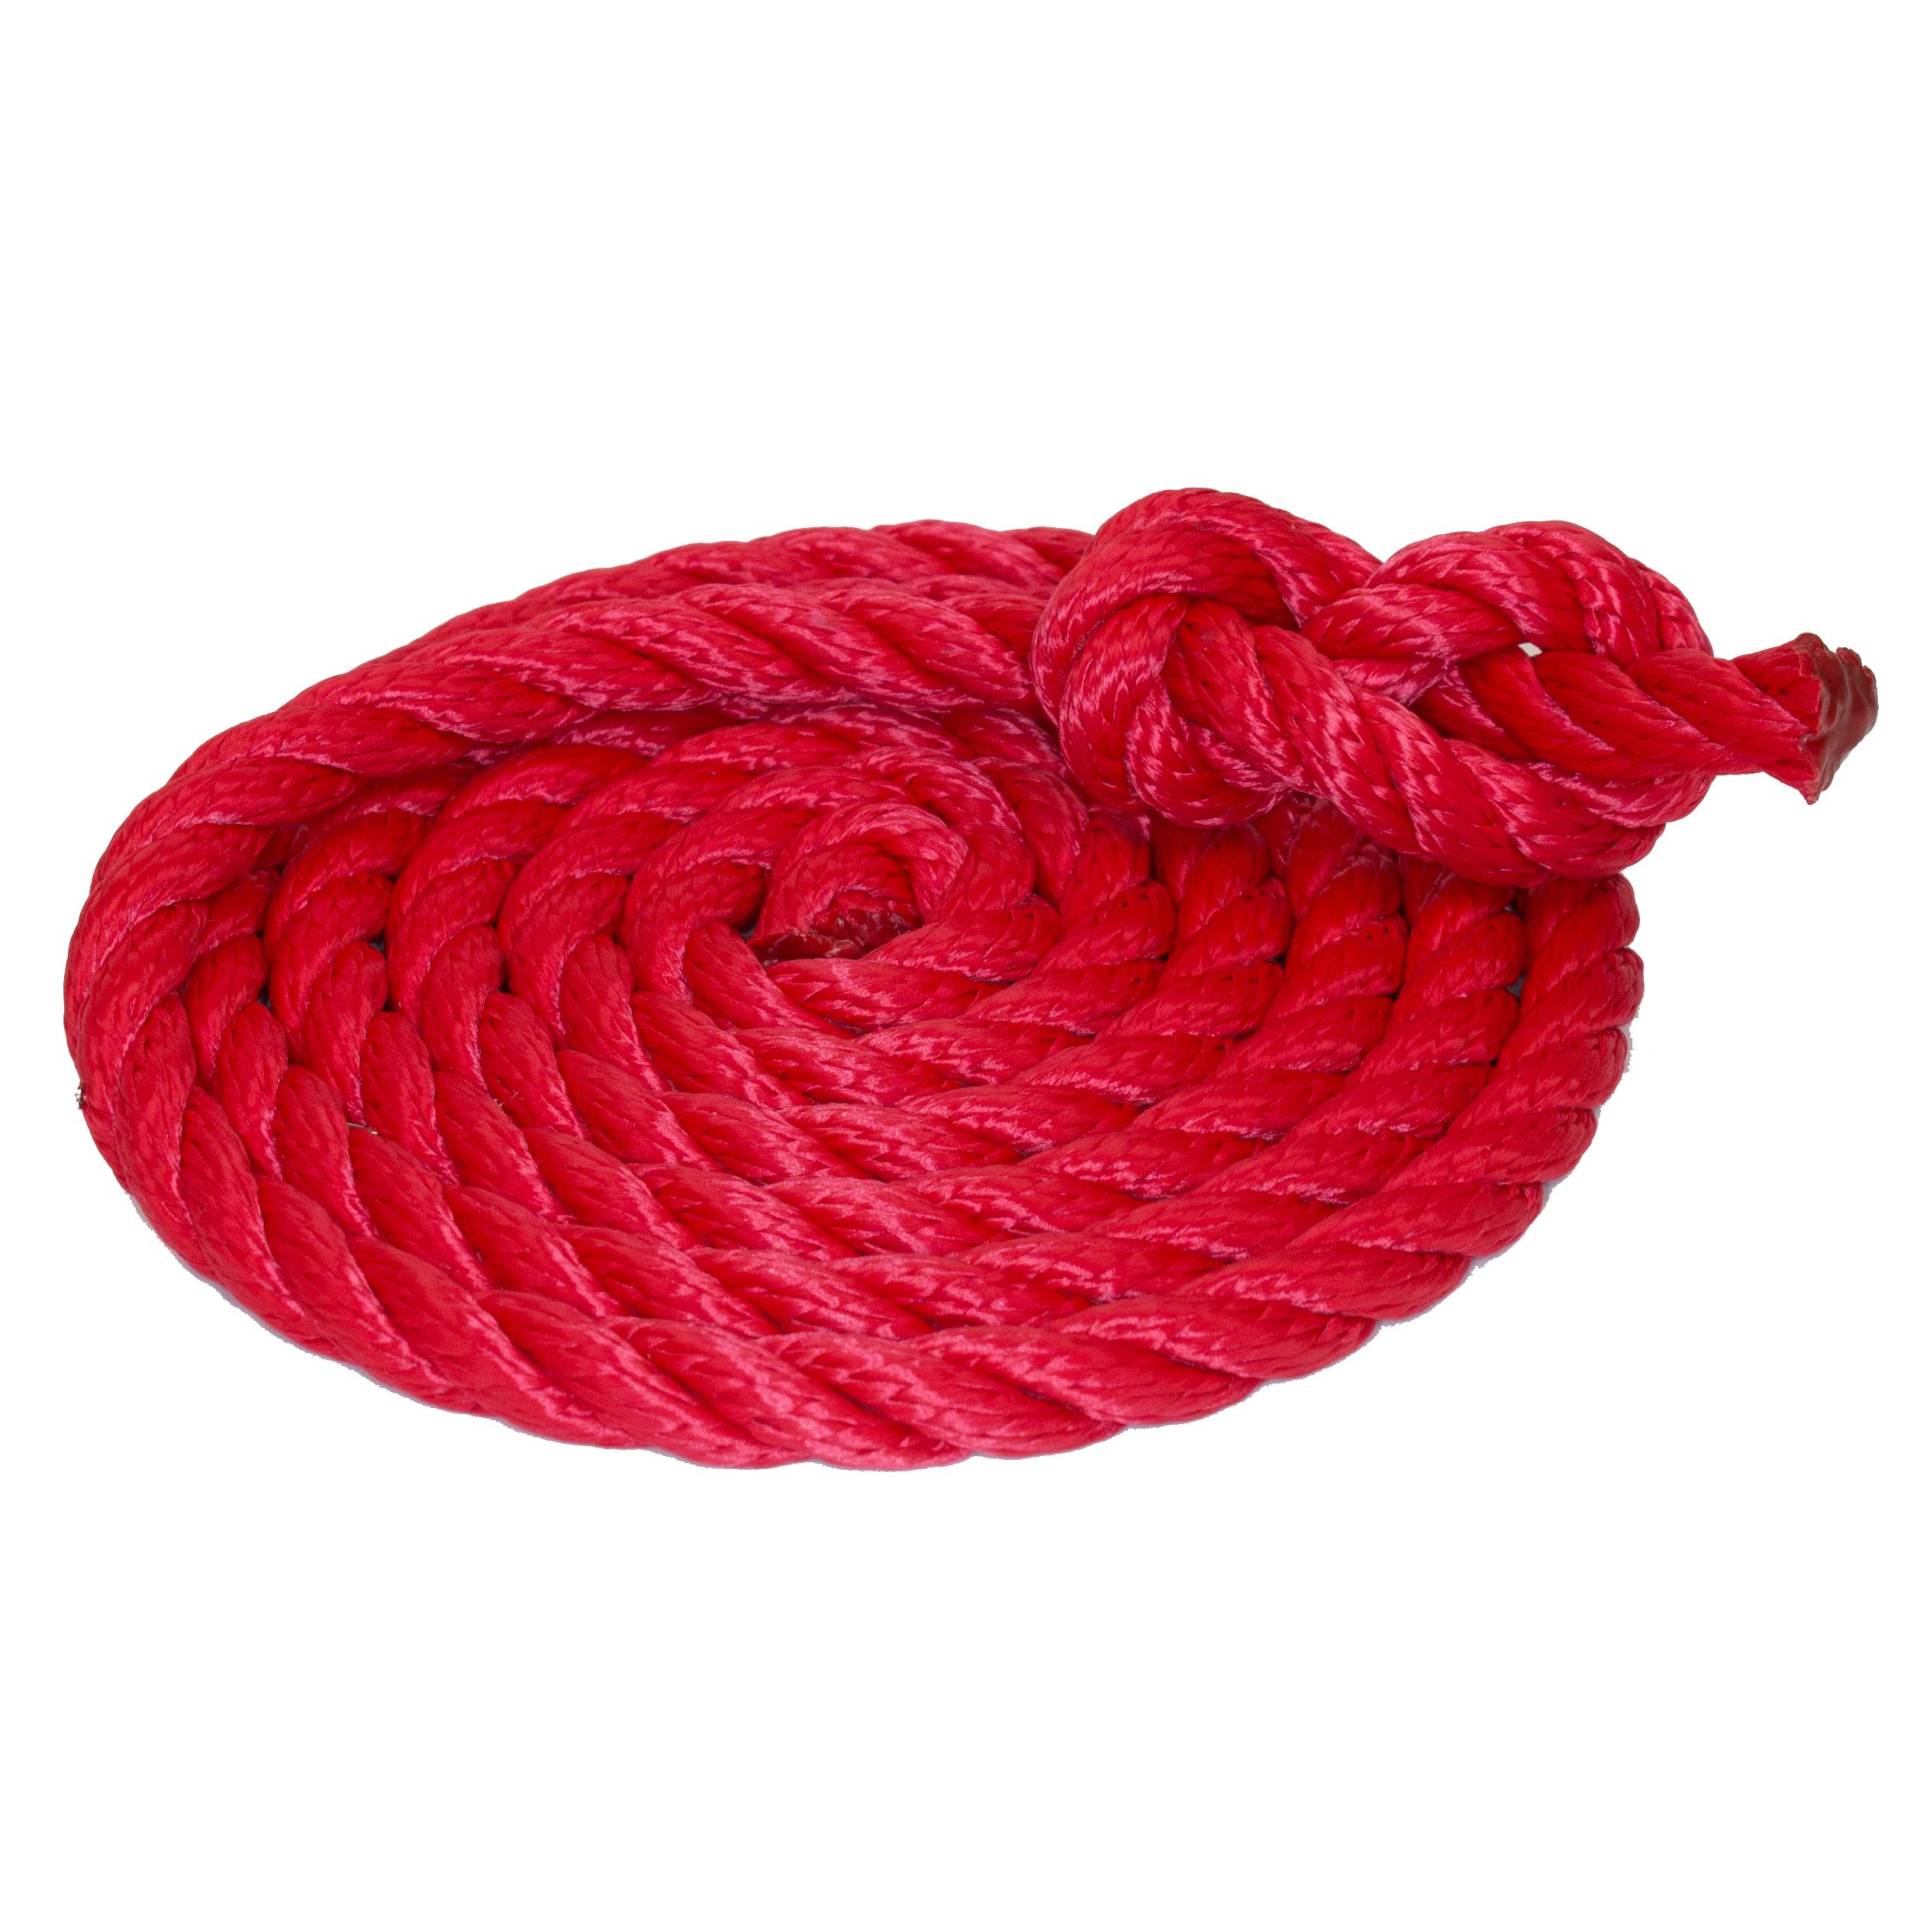 Tauwerk 10mm - Farbe: rot 3-litzig gedreht Leine Schnur Festmacher Rope Tau Seil Allzweckseil Reepschnur Lirolen-Tauwerk PP-Multifil, 3-schäftig gedreht (Länge 50mtr.) von HAMBURGER TAUWERK-FABRIK EST. 1901